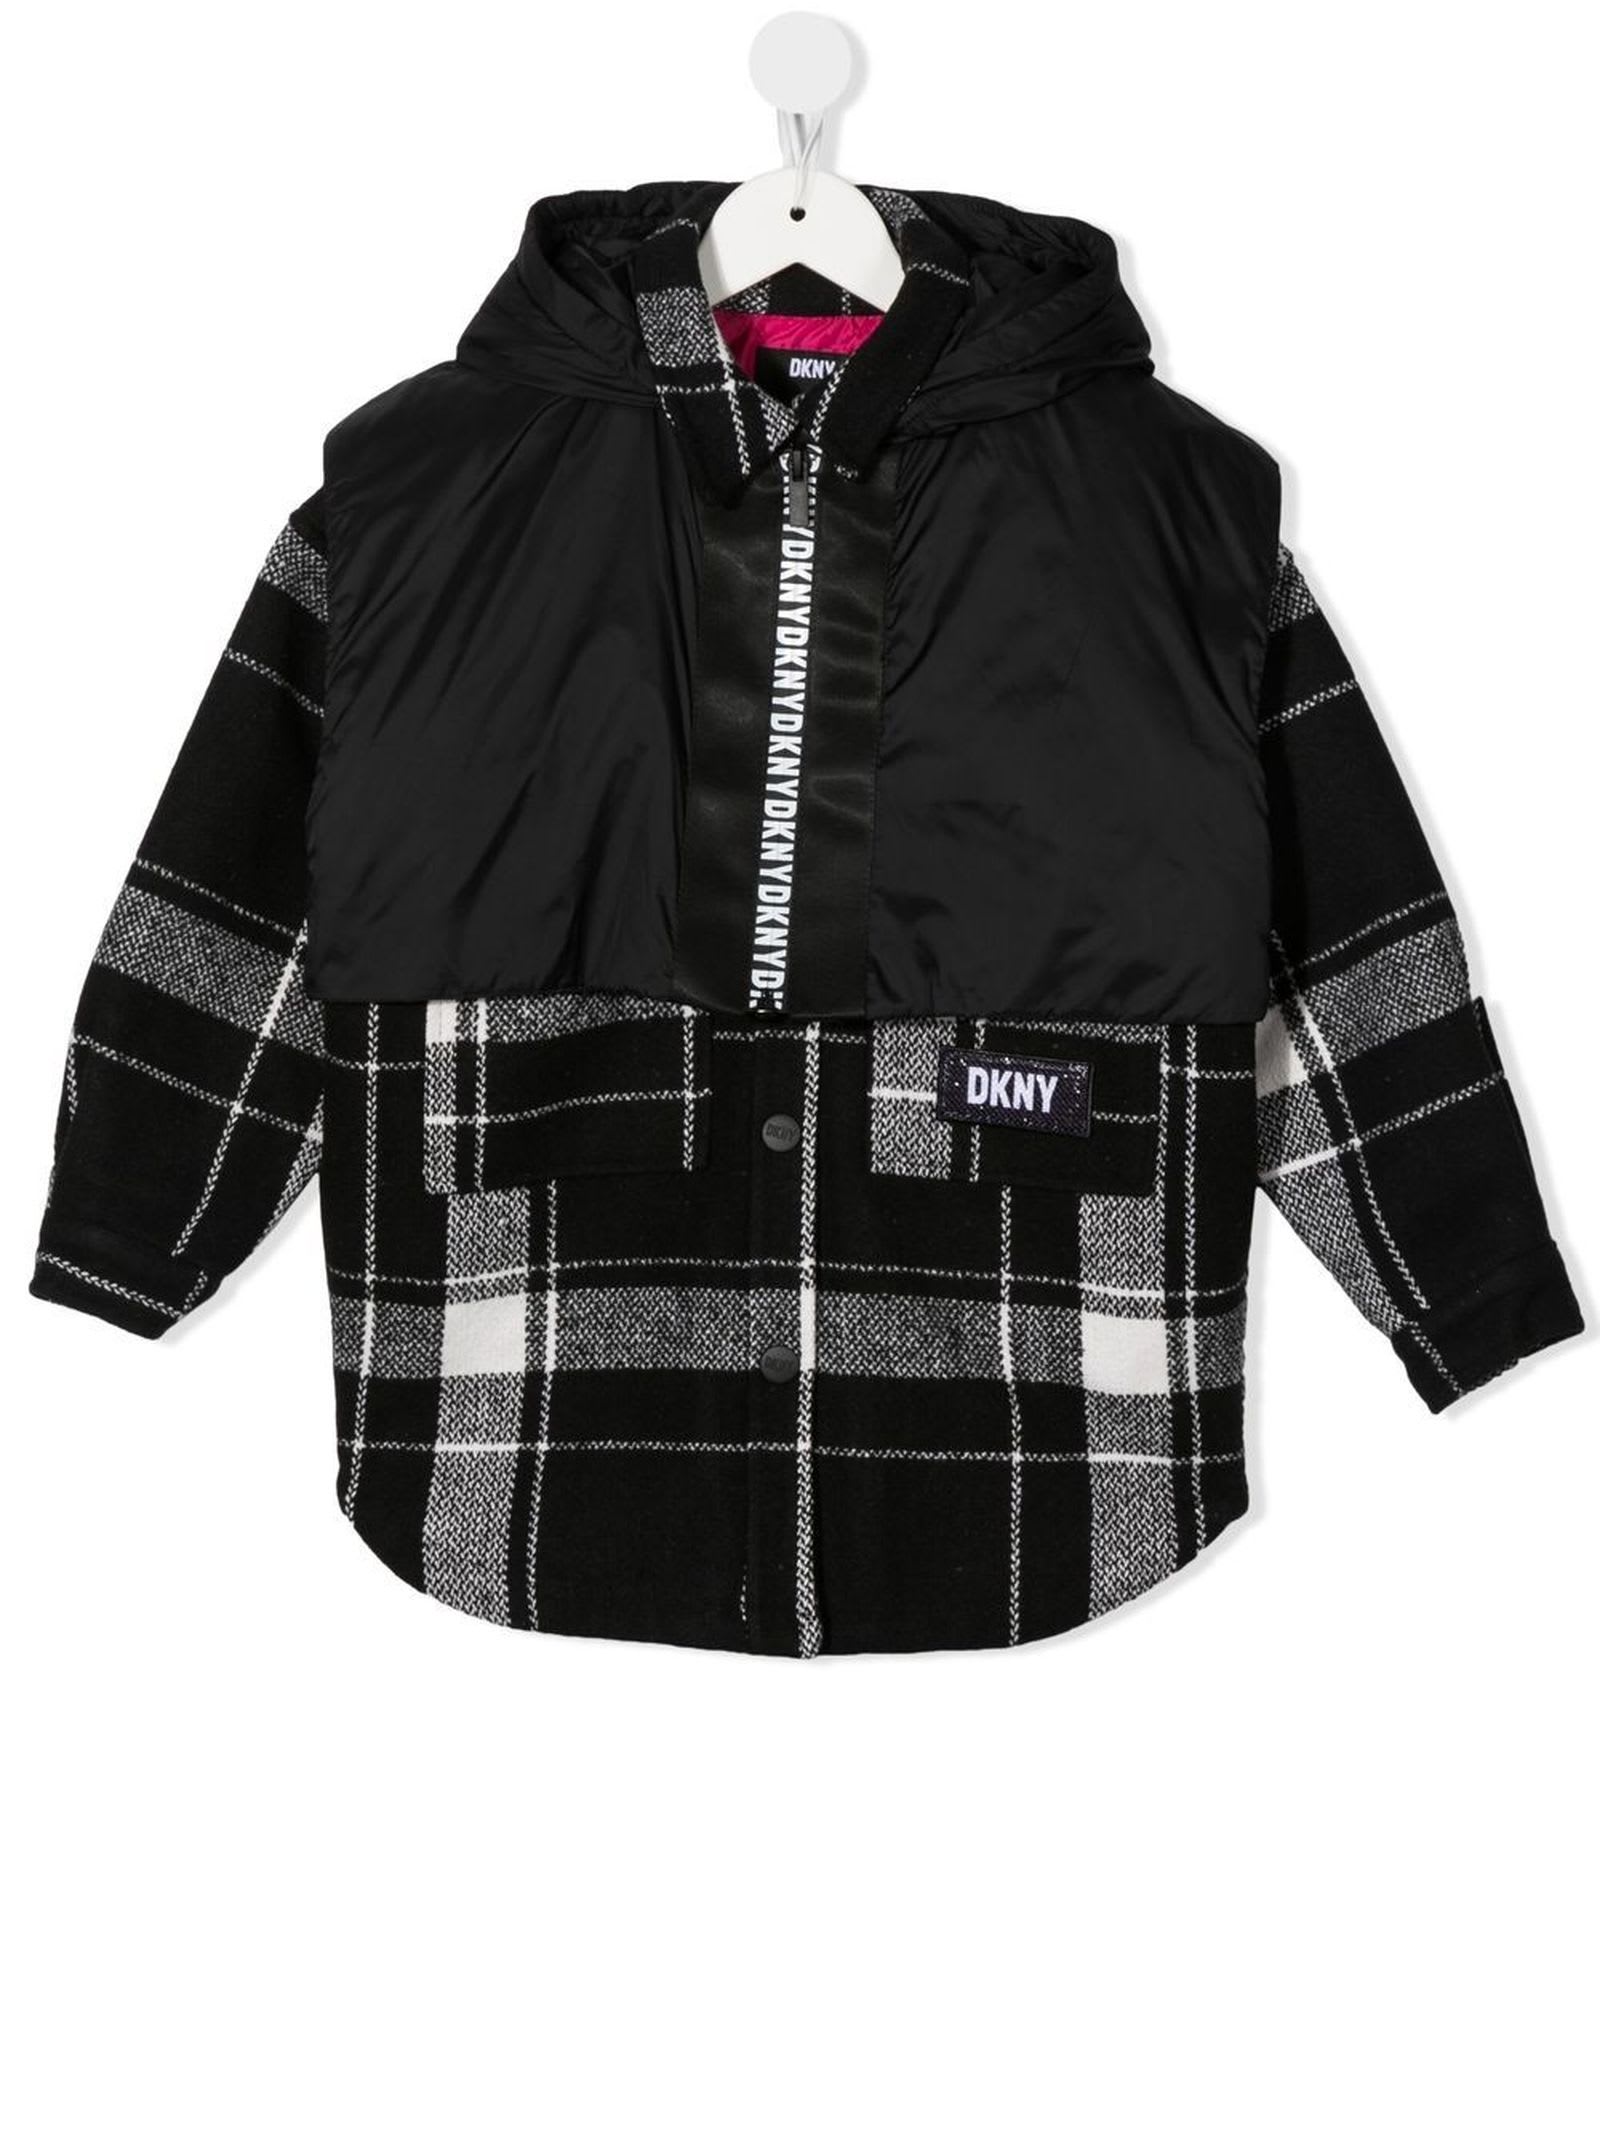 DKNY Black Polyester Jacket